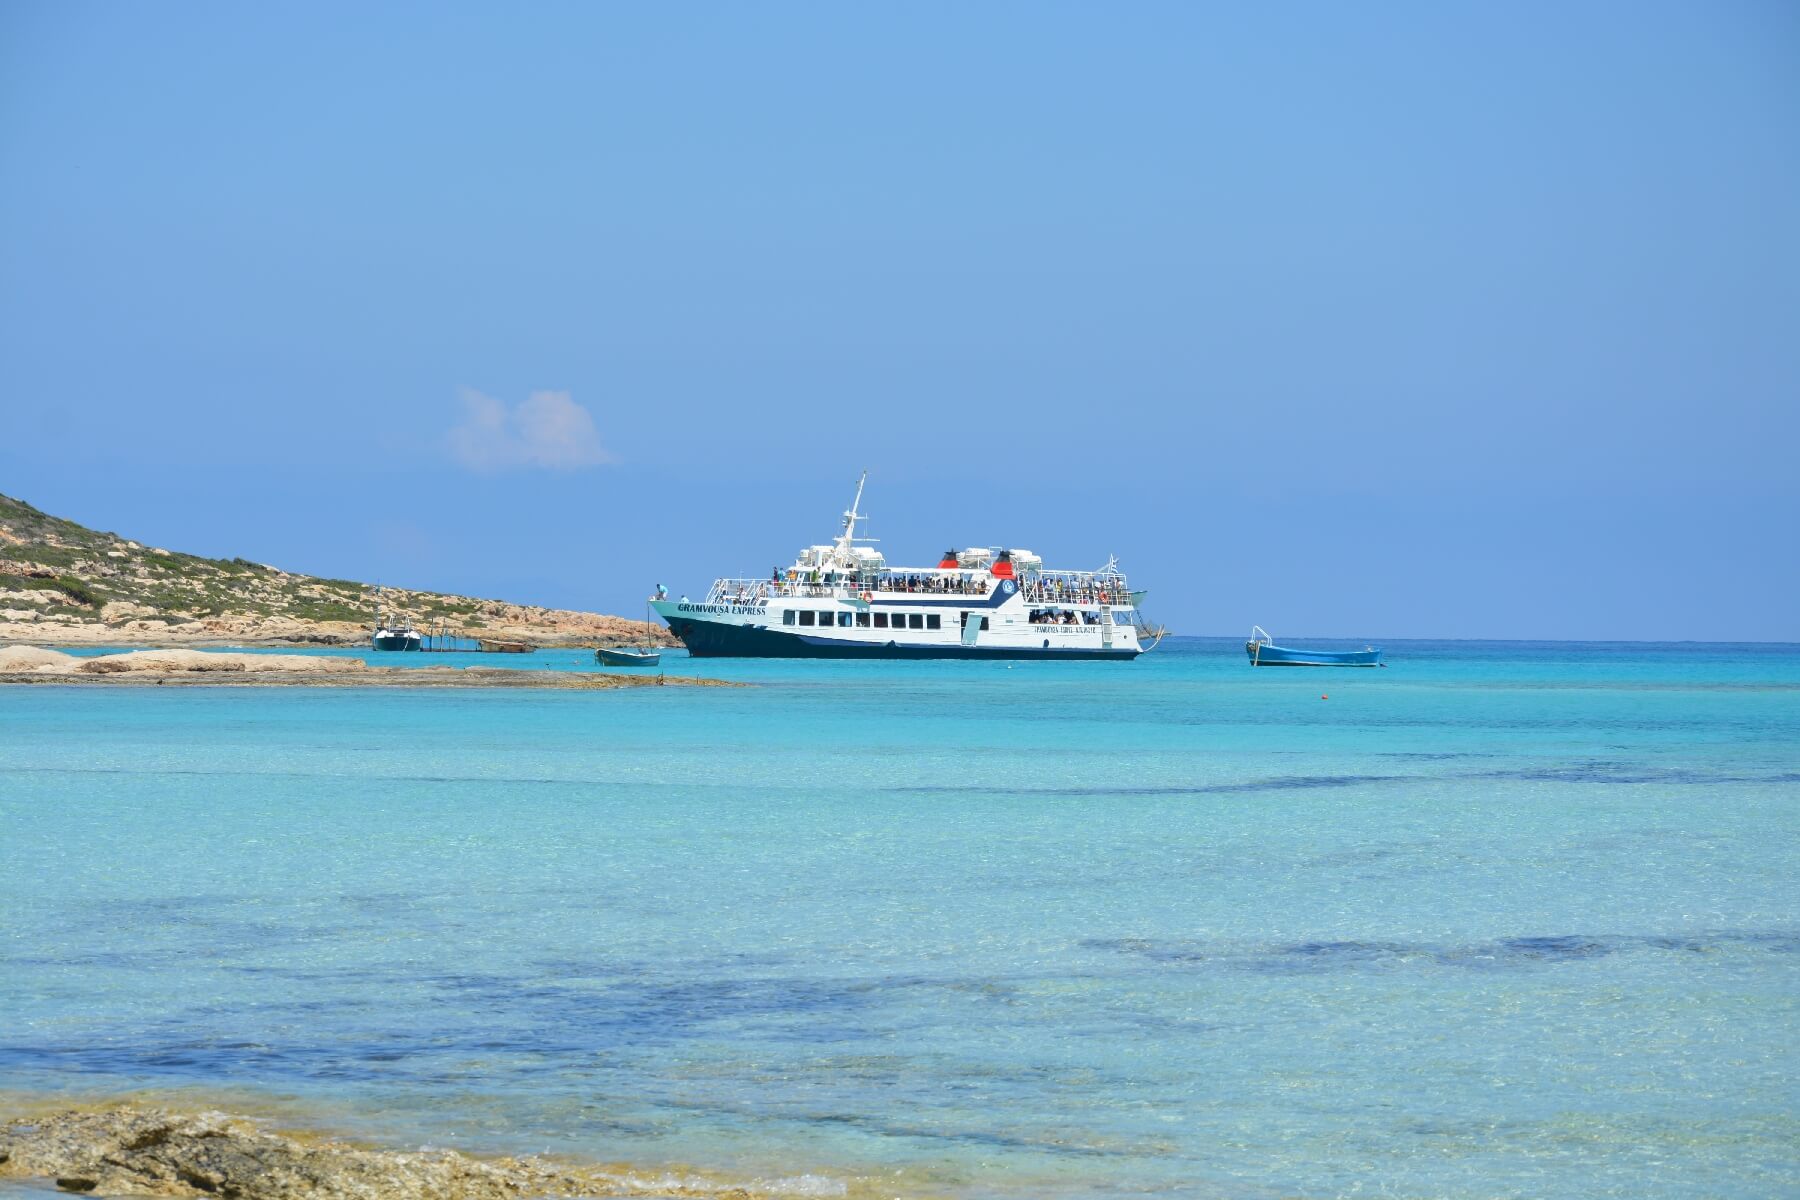 gramvousa & Balos ship cruise